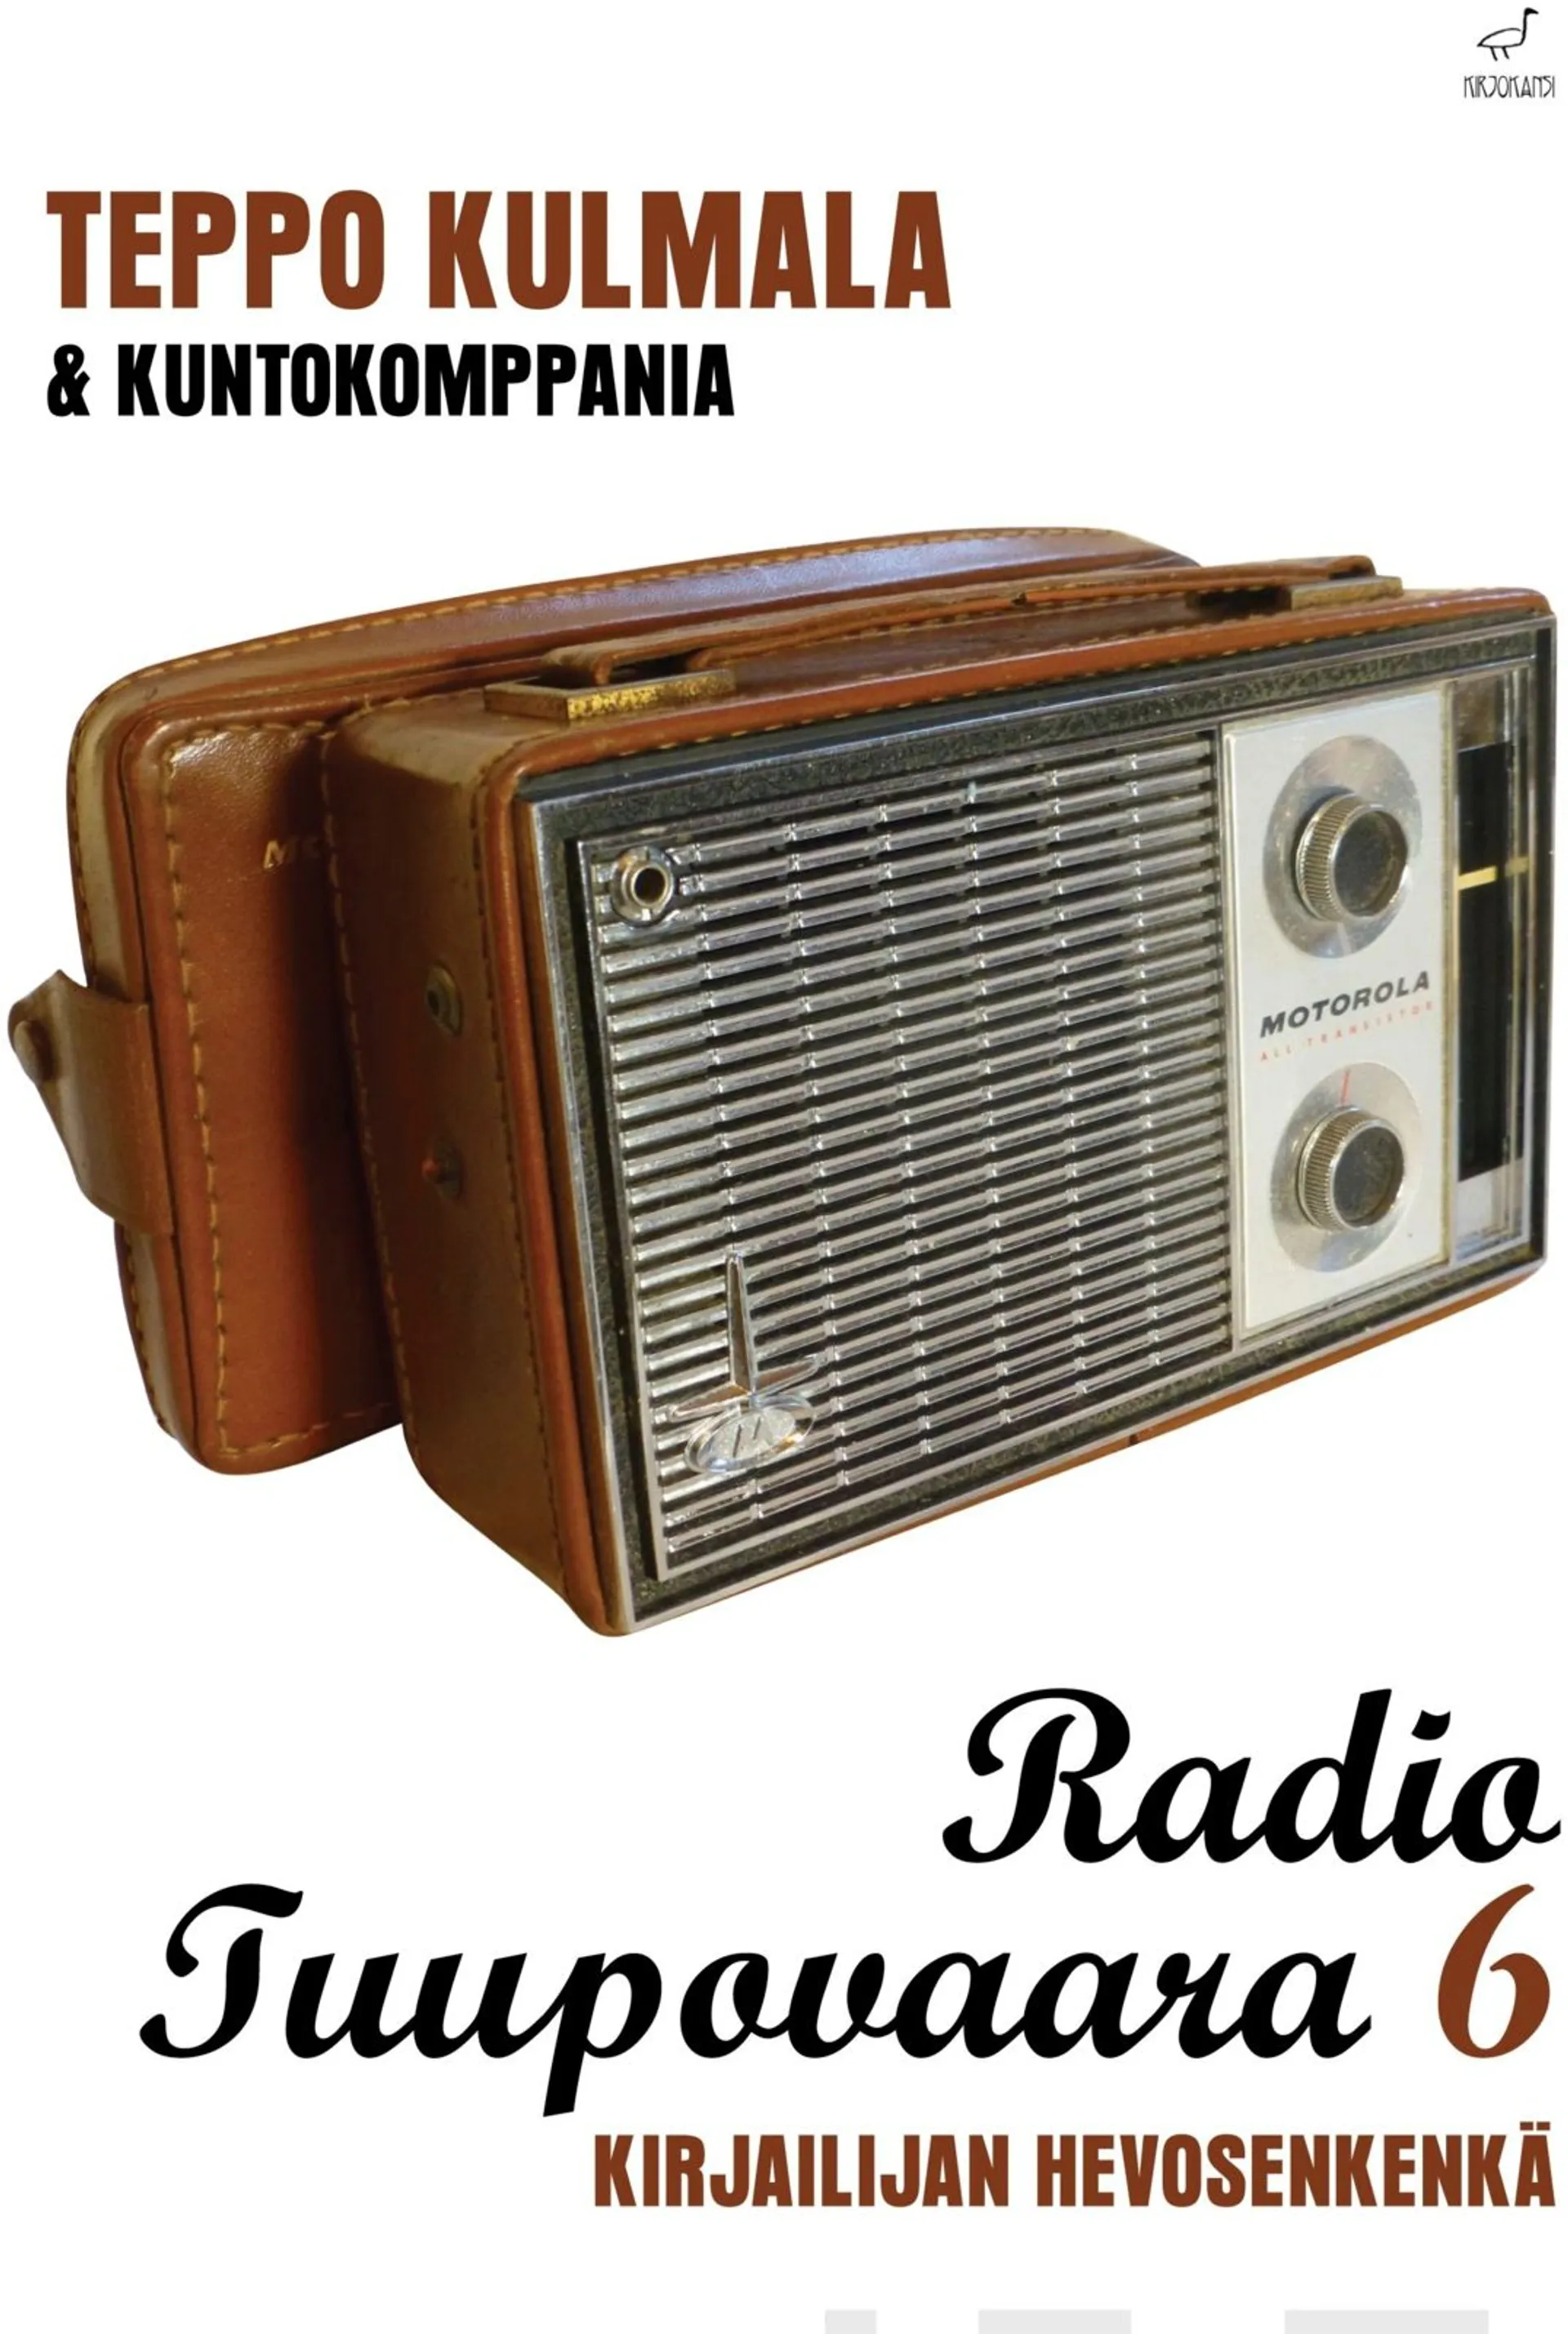 Kulmala, Radio Tuupovaara 6